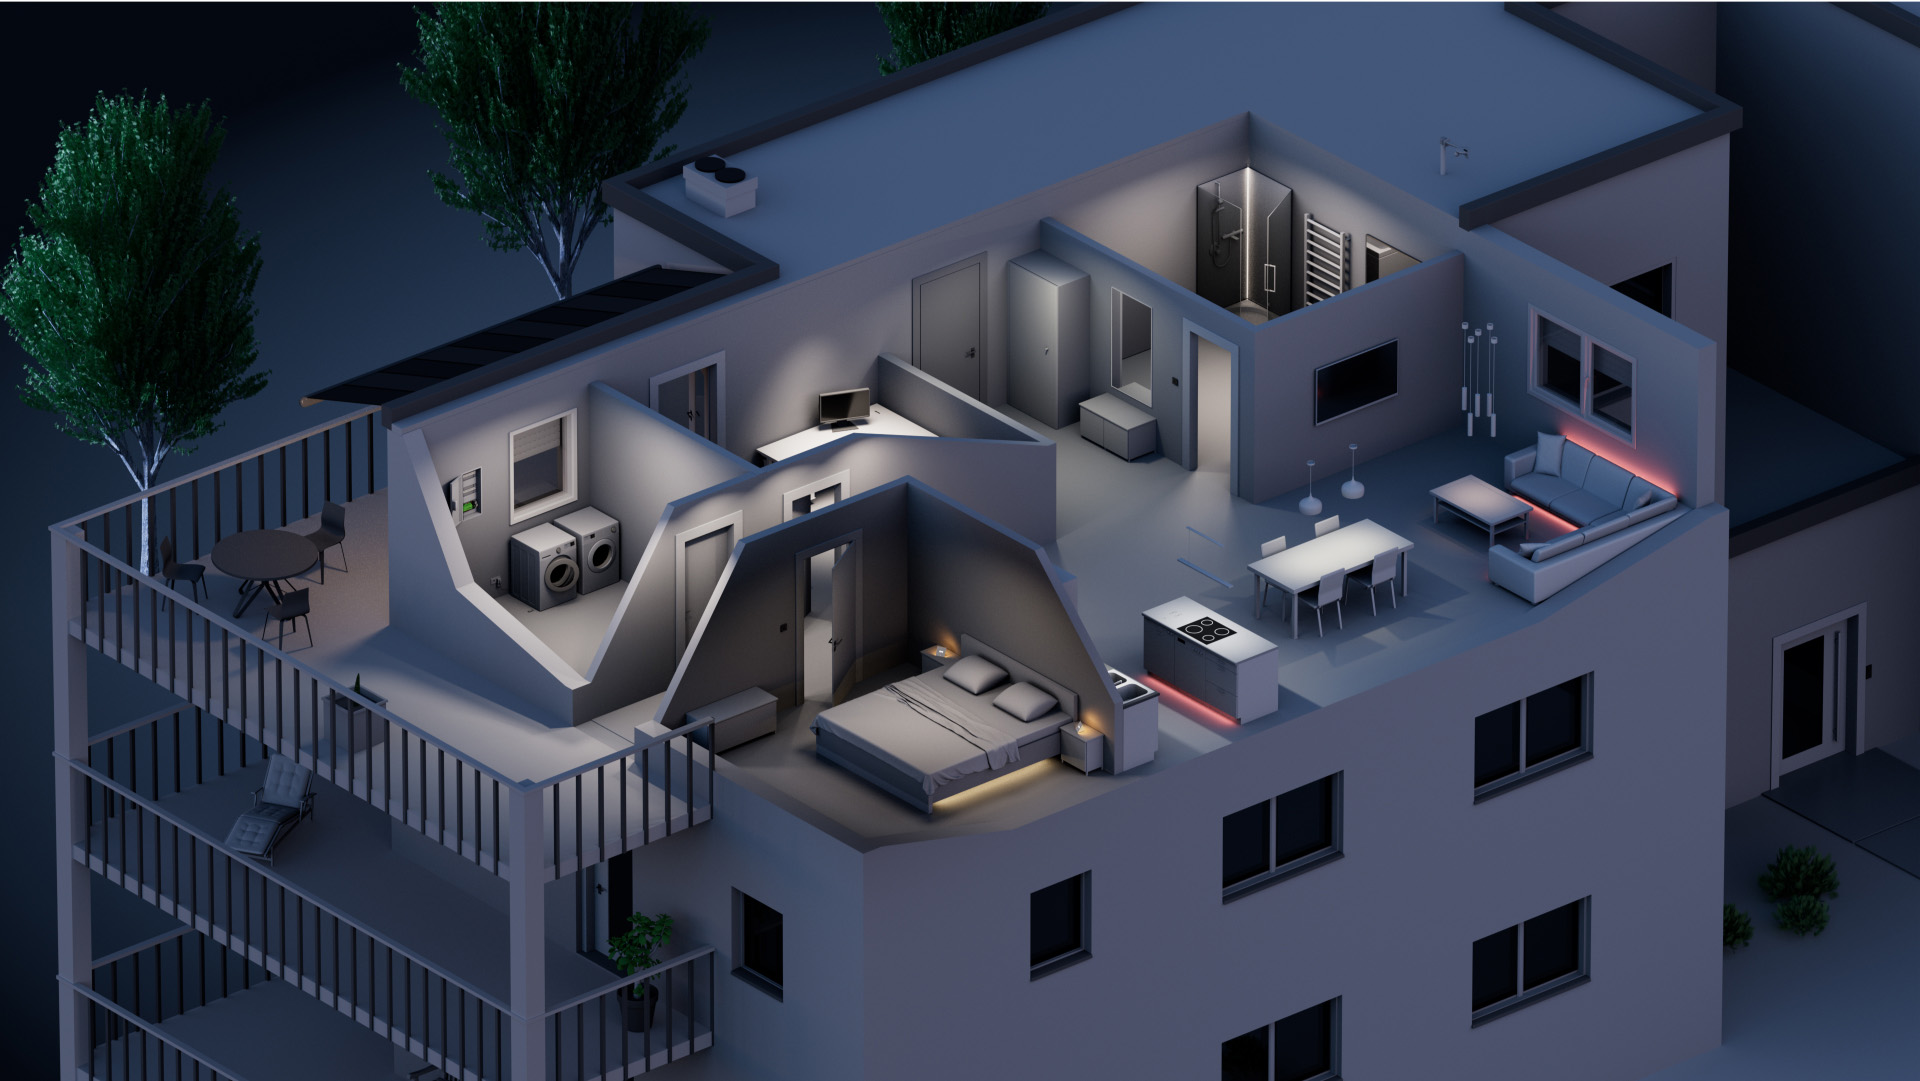 Wizualizacja zintegrowanego systemu automatyki domowej w budynku mieszkalnym.